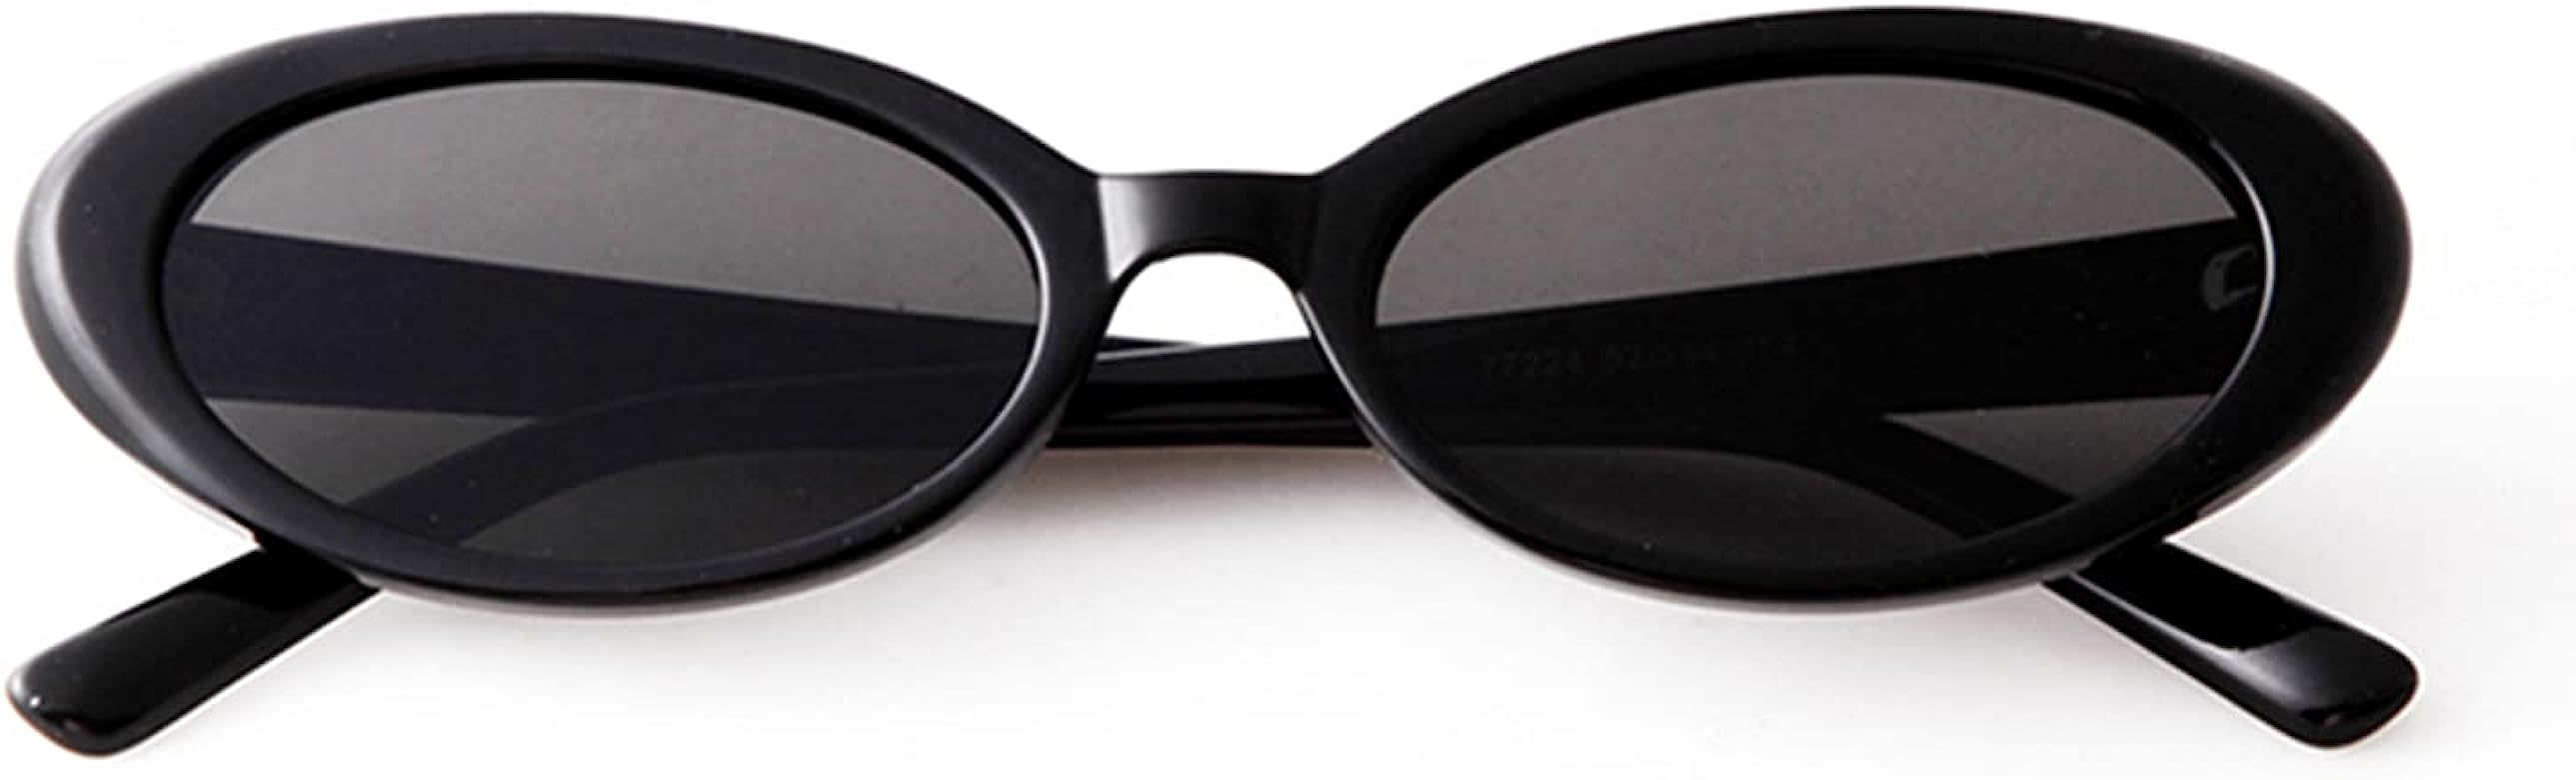 Laurinny 90s Sunglasses for Women Men Retro Oval Sunglasses Glasses | Amazon (US)